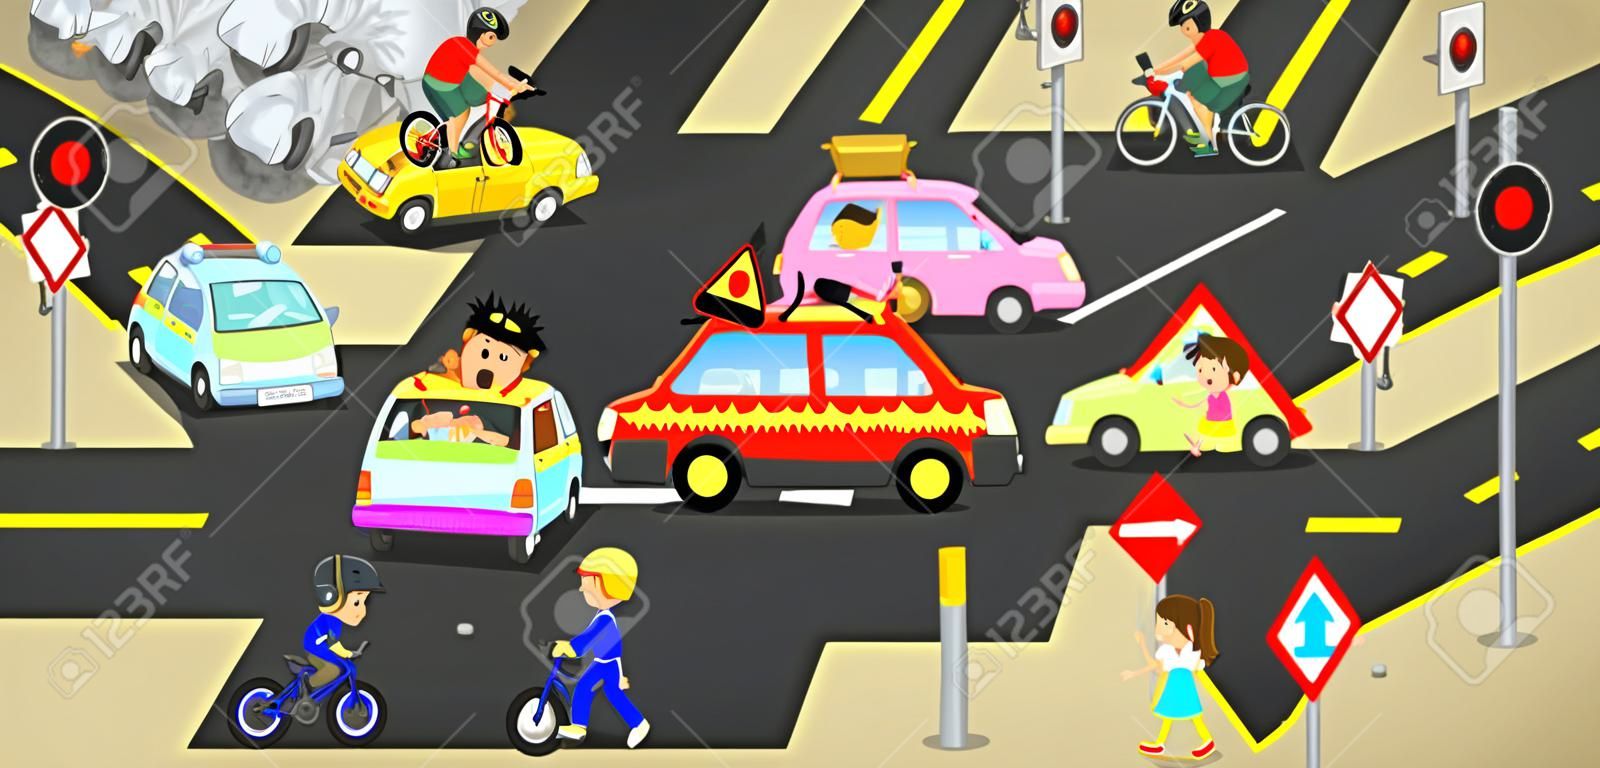 Несчастные случаи, травмы, опасность и безопасность осторожность на дорожных транспортных средствах движения вызывают на автомобилях велосипеда и нерадивых людей на городской улице со знаком и символом в милый смешной концепции мультфильм для детей, создать с помощью вектора